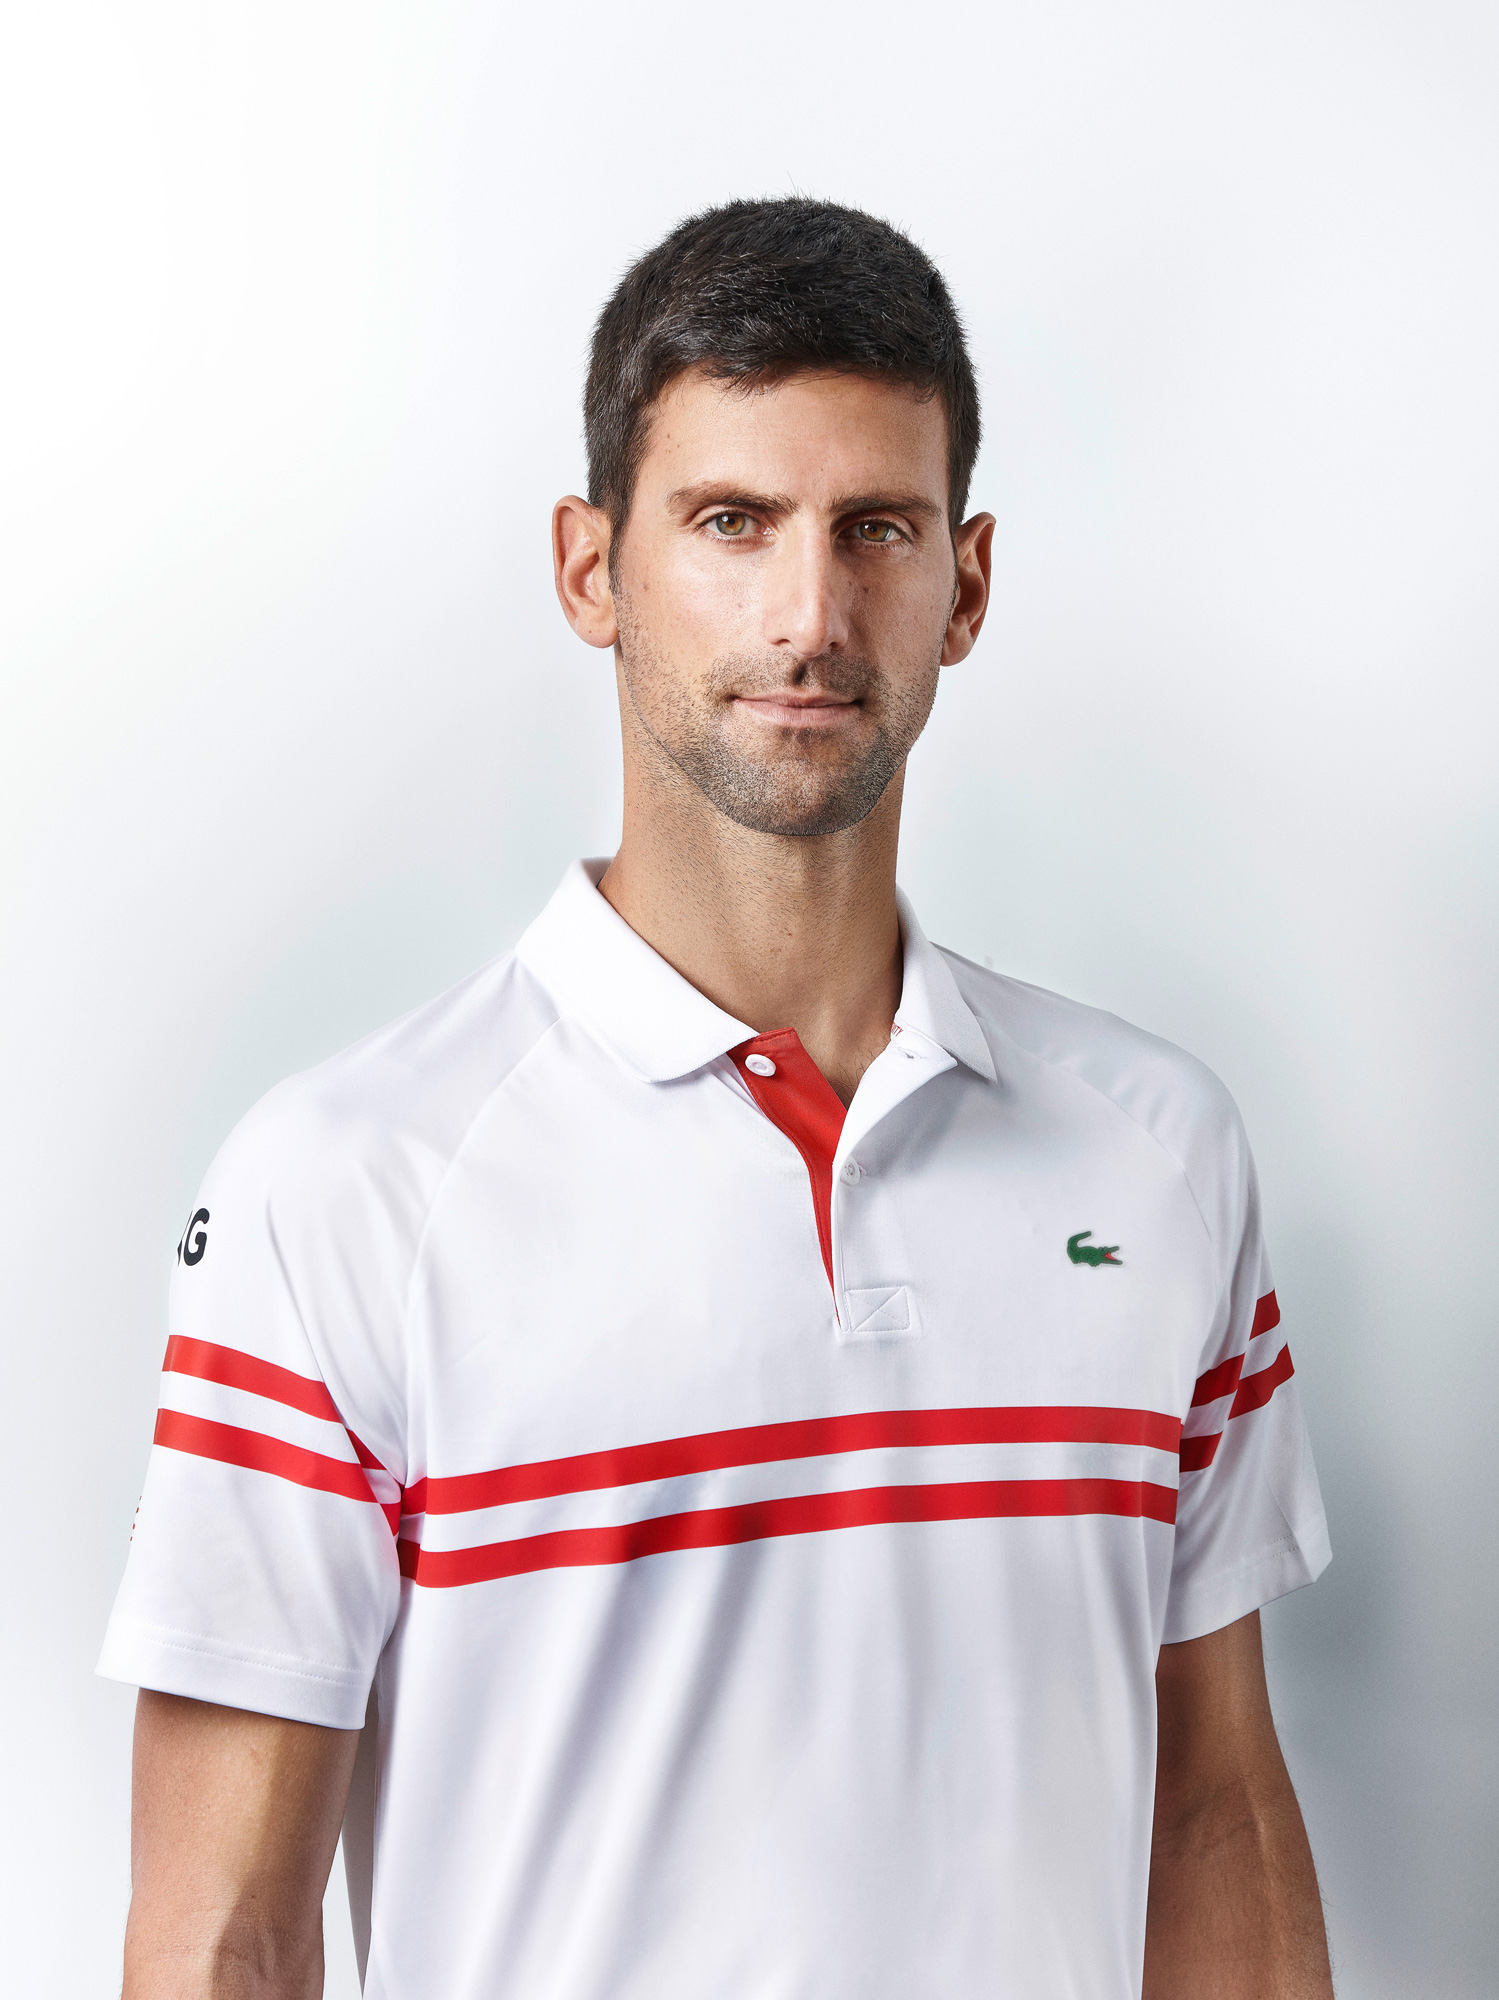 RB International Novak Djokovic Studio 16 03 2021 107 2 www 